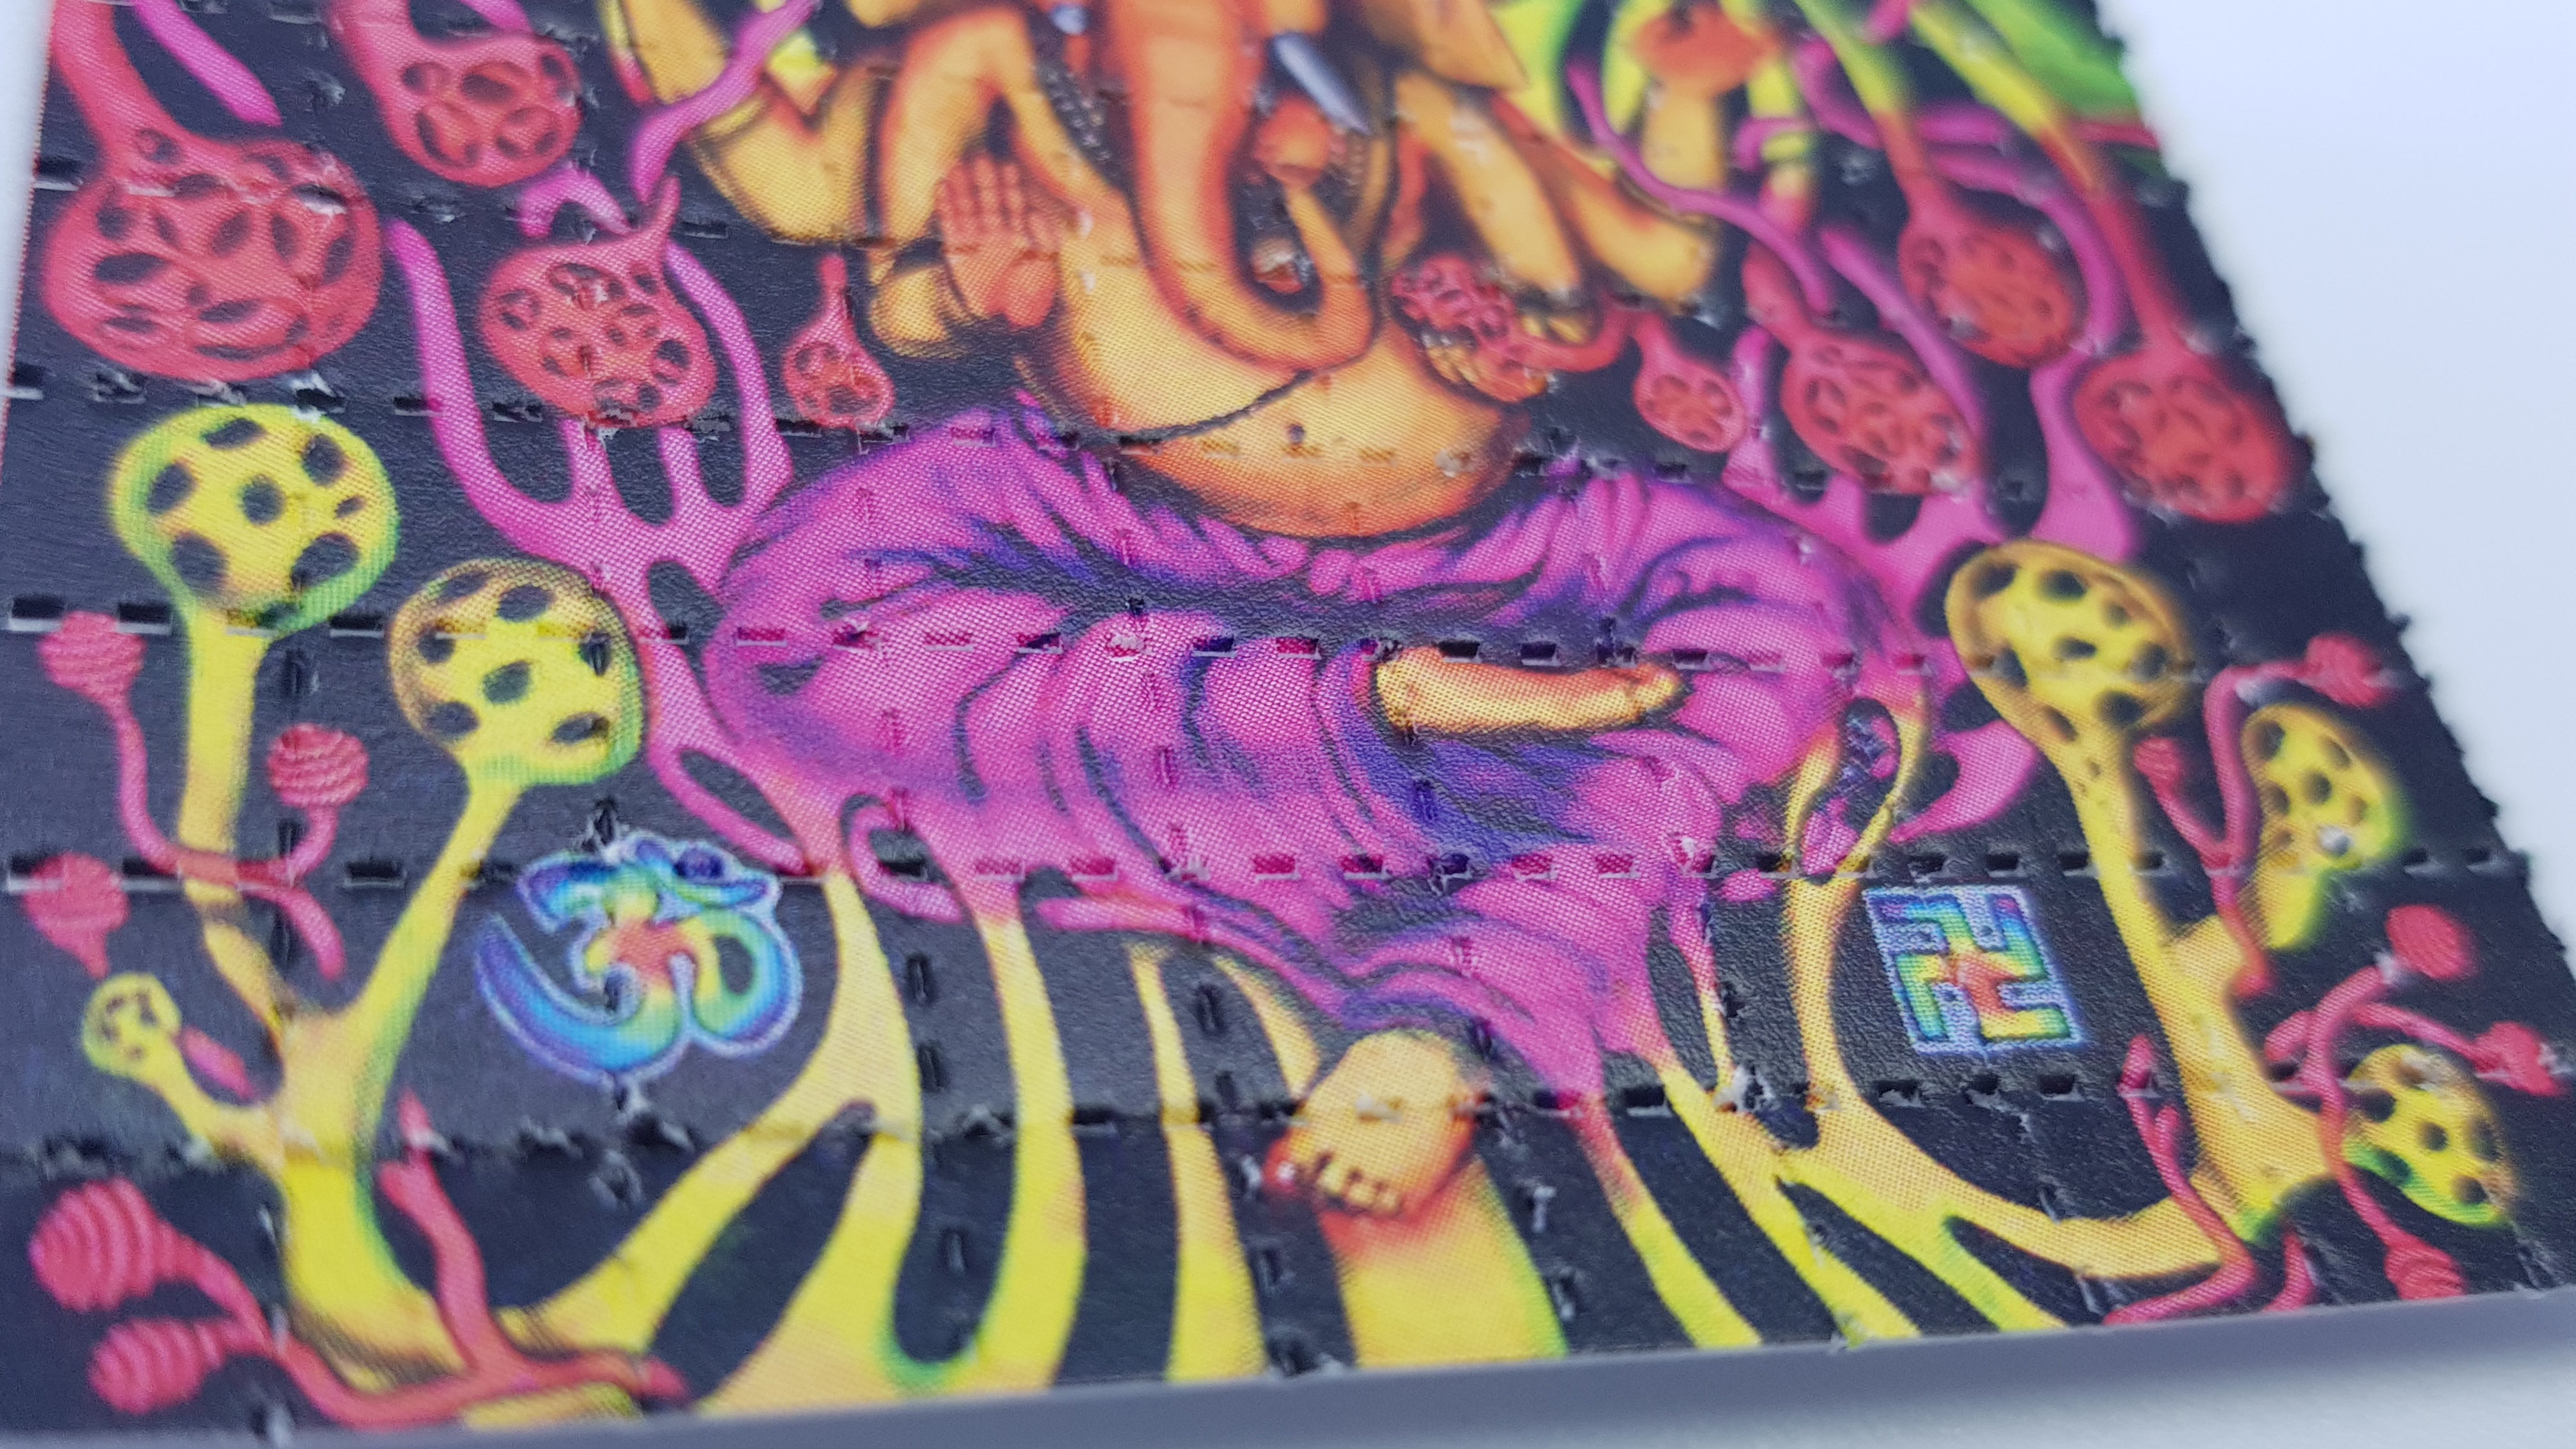 Psychedelic Ganesh LSD Blotter Art 